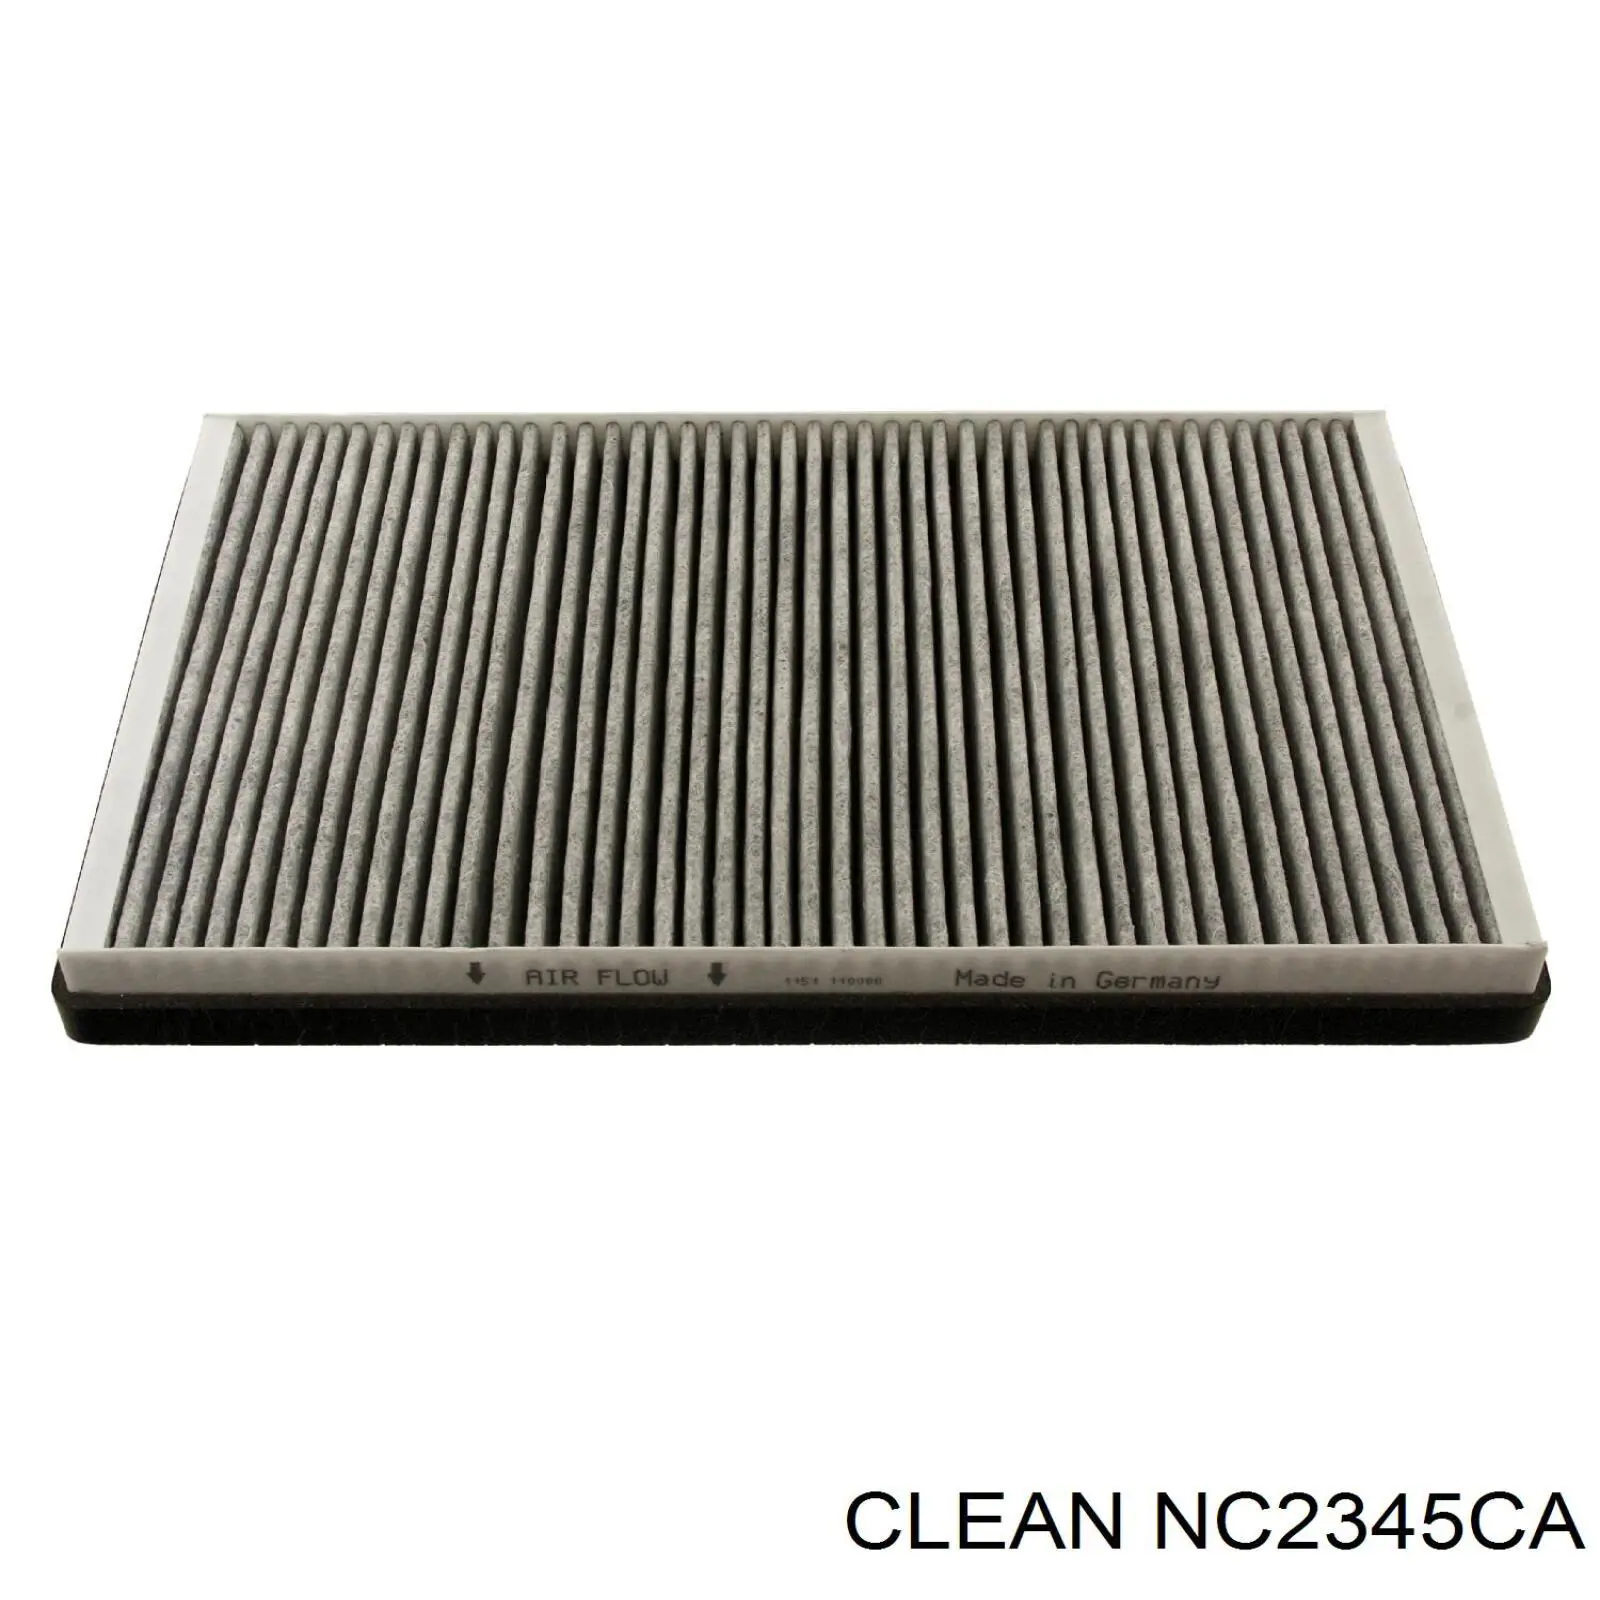 NC2345CA Clean filtro habitáculo